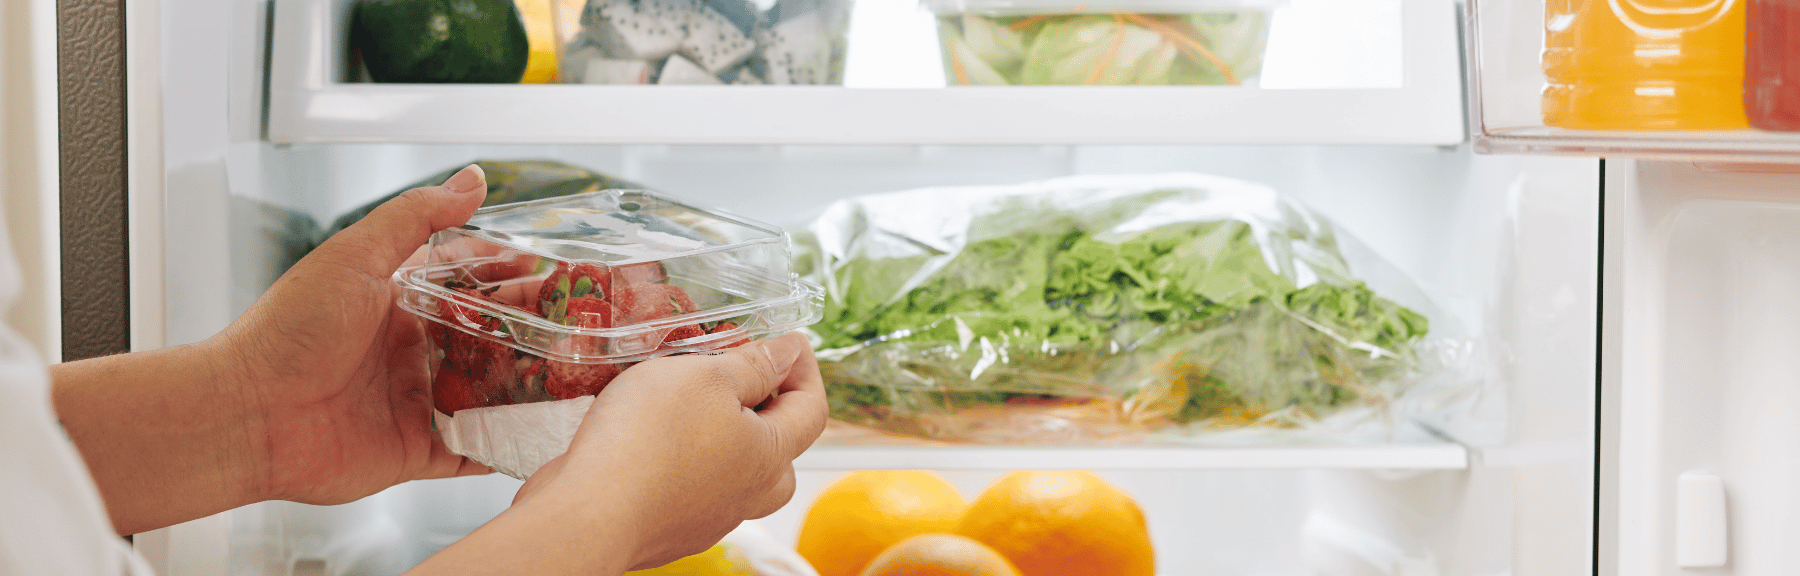 Tips para tener siempre un refrigerador limpio y ordenado